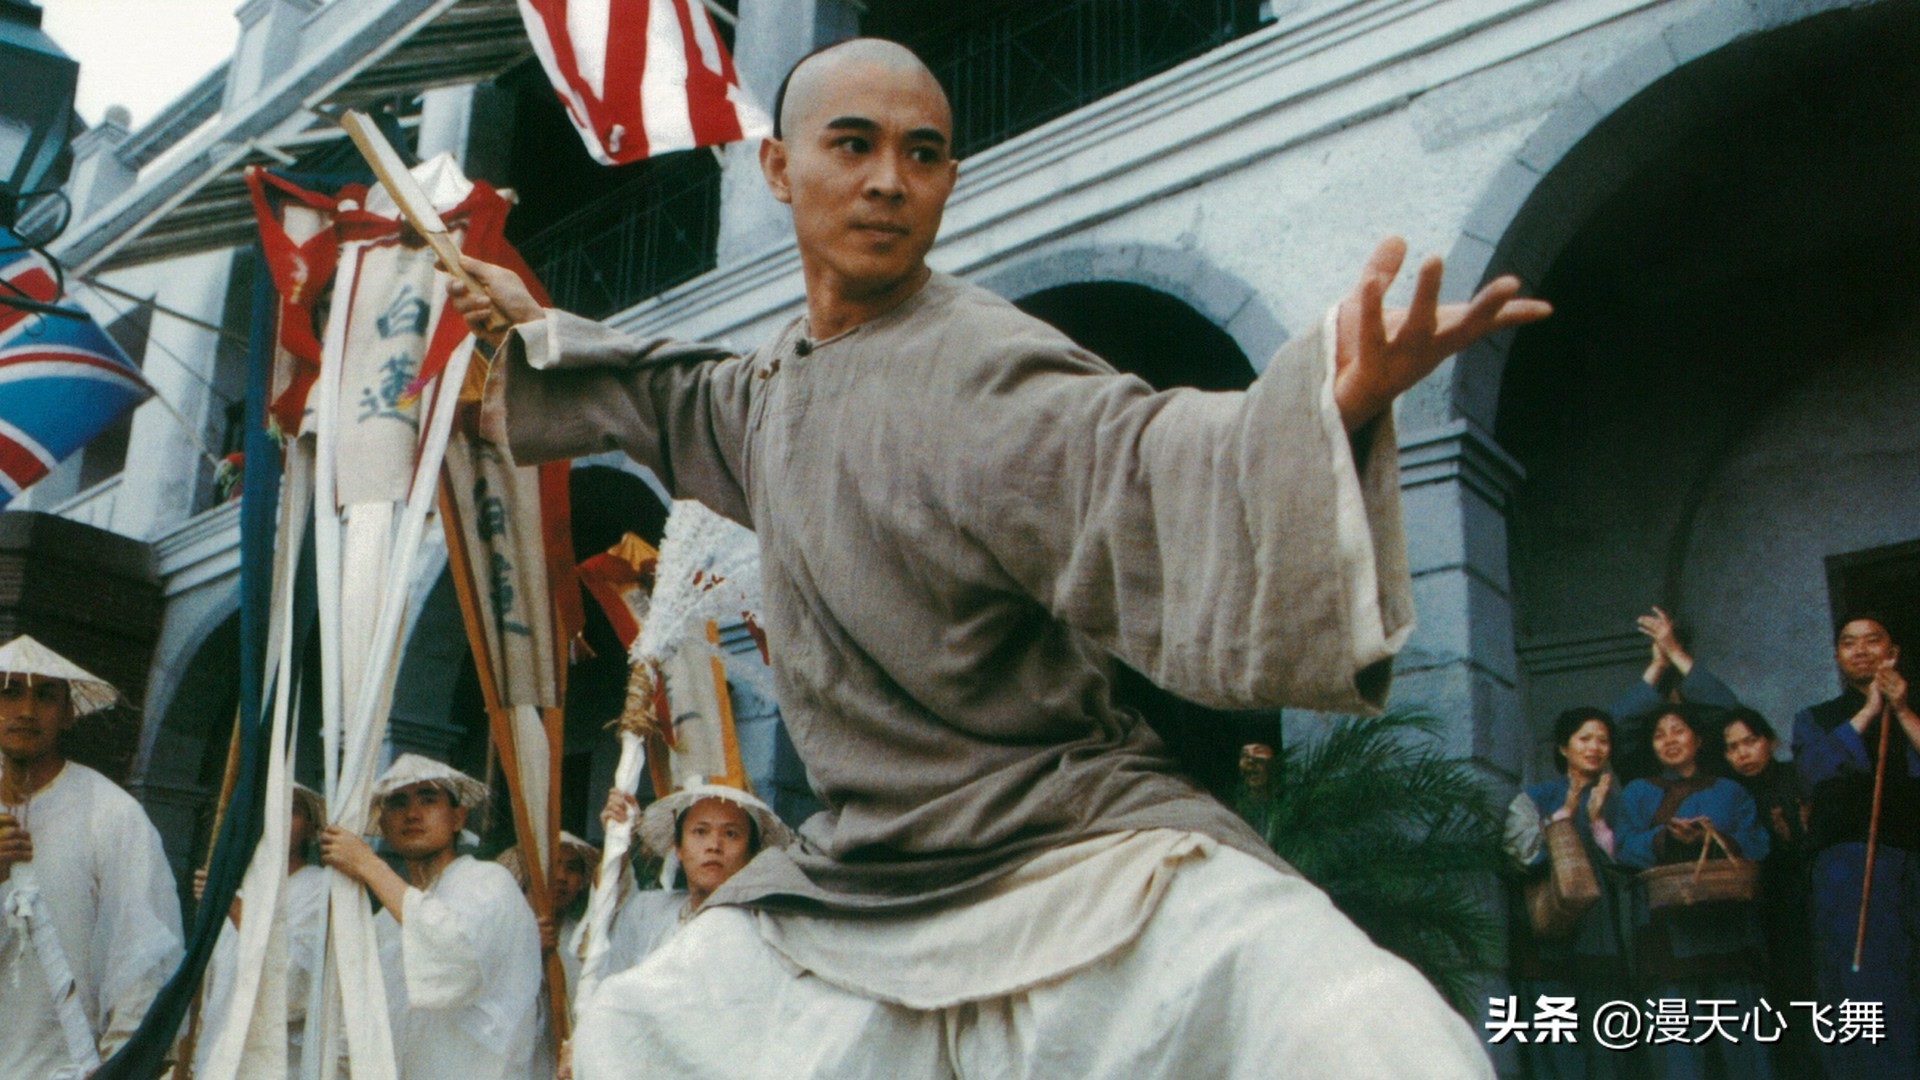 1991年香港都上映了哪些电影，你认为哪部最经典呢？